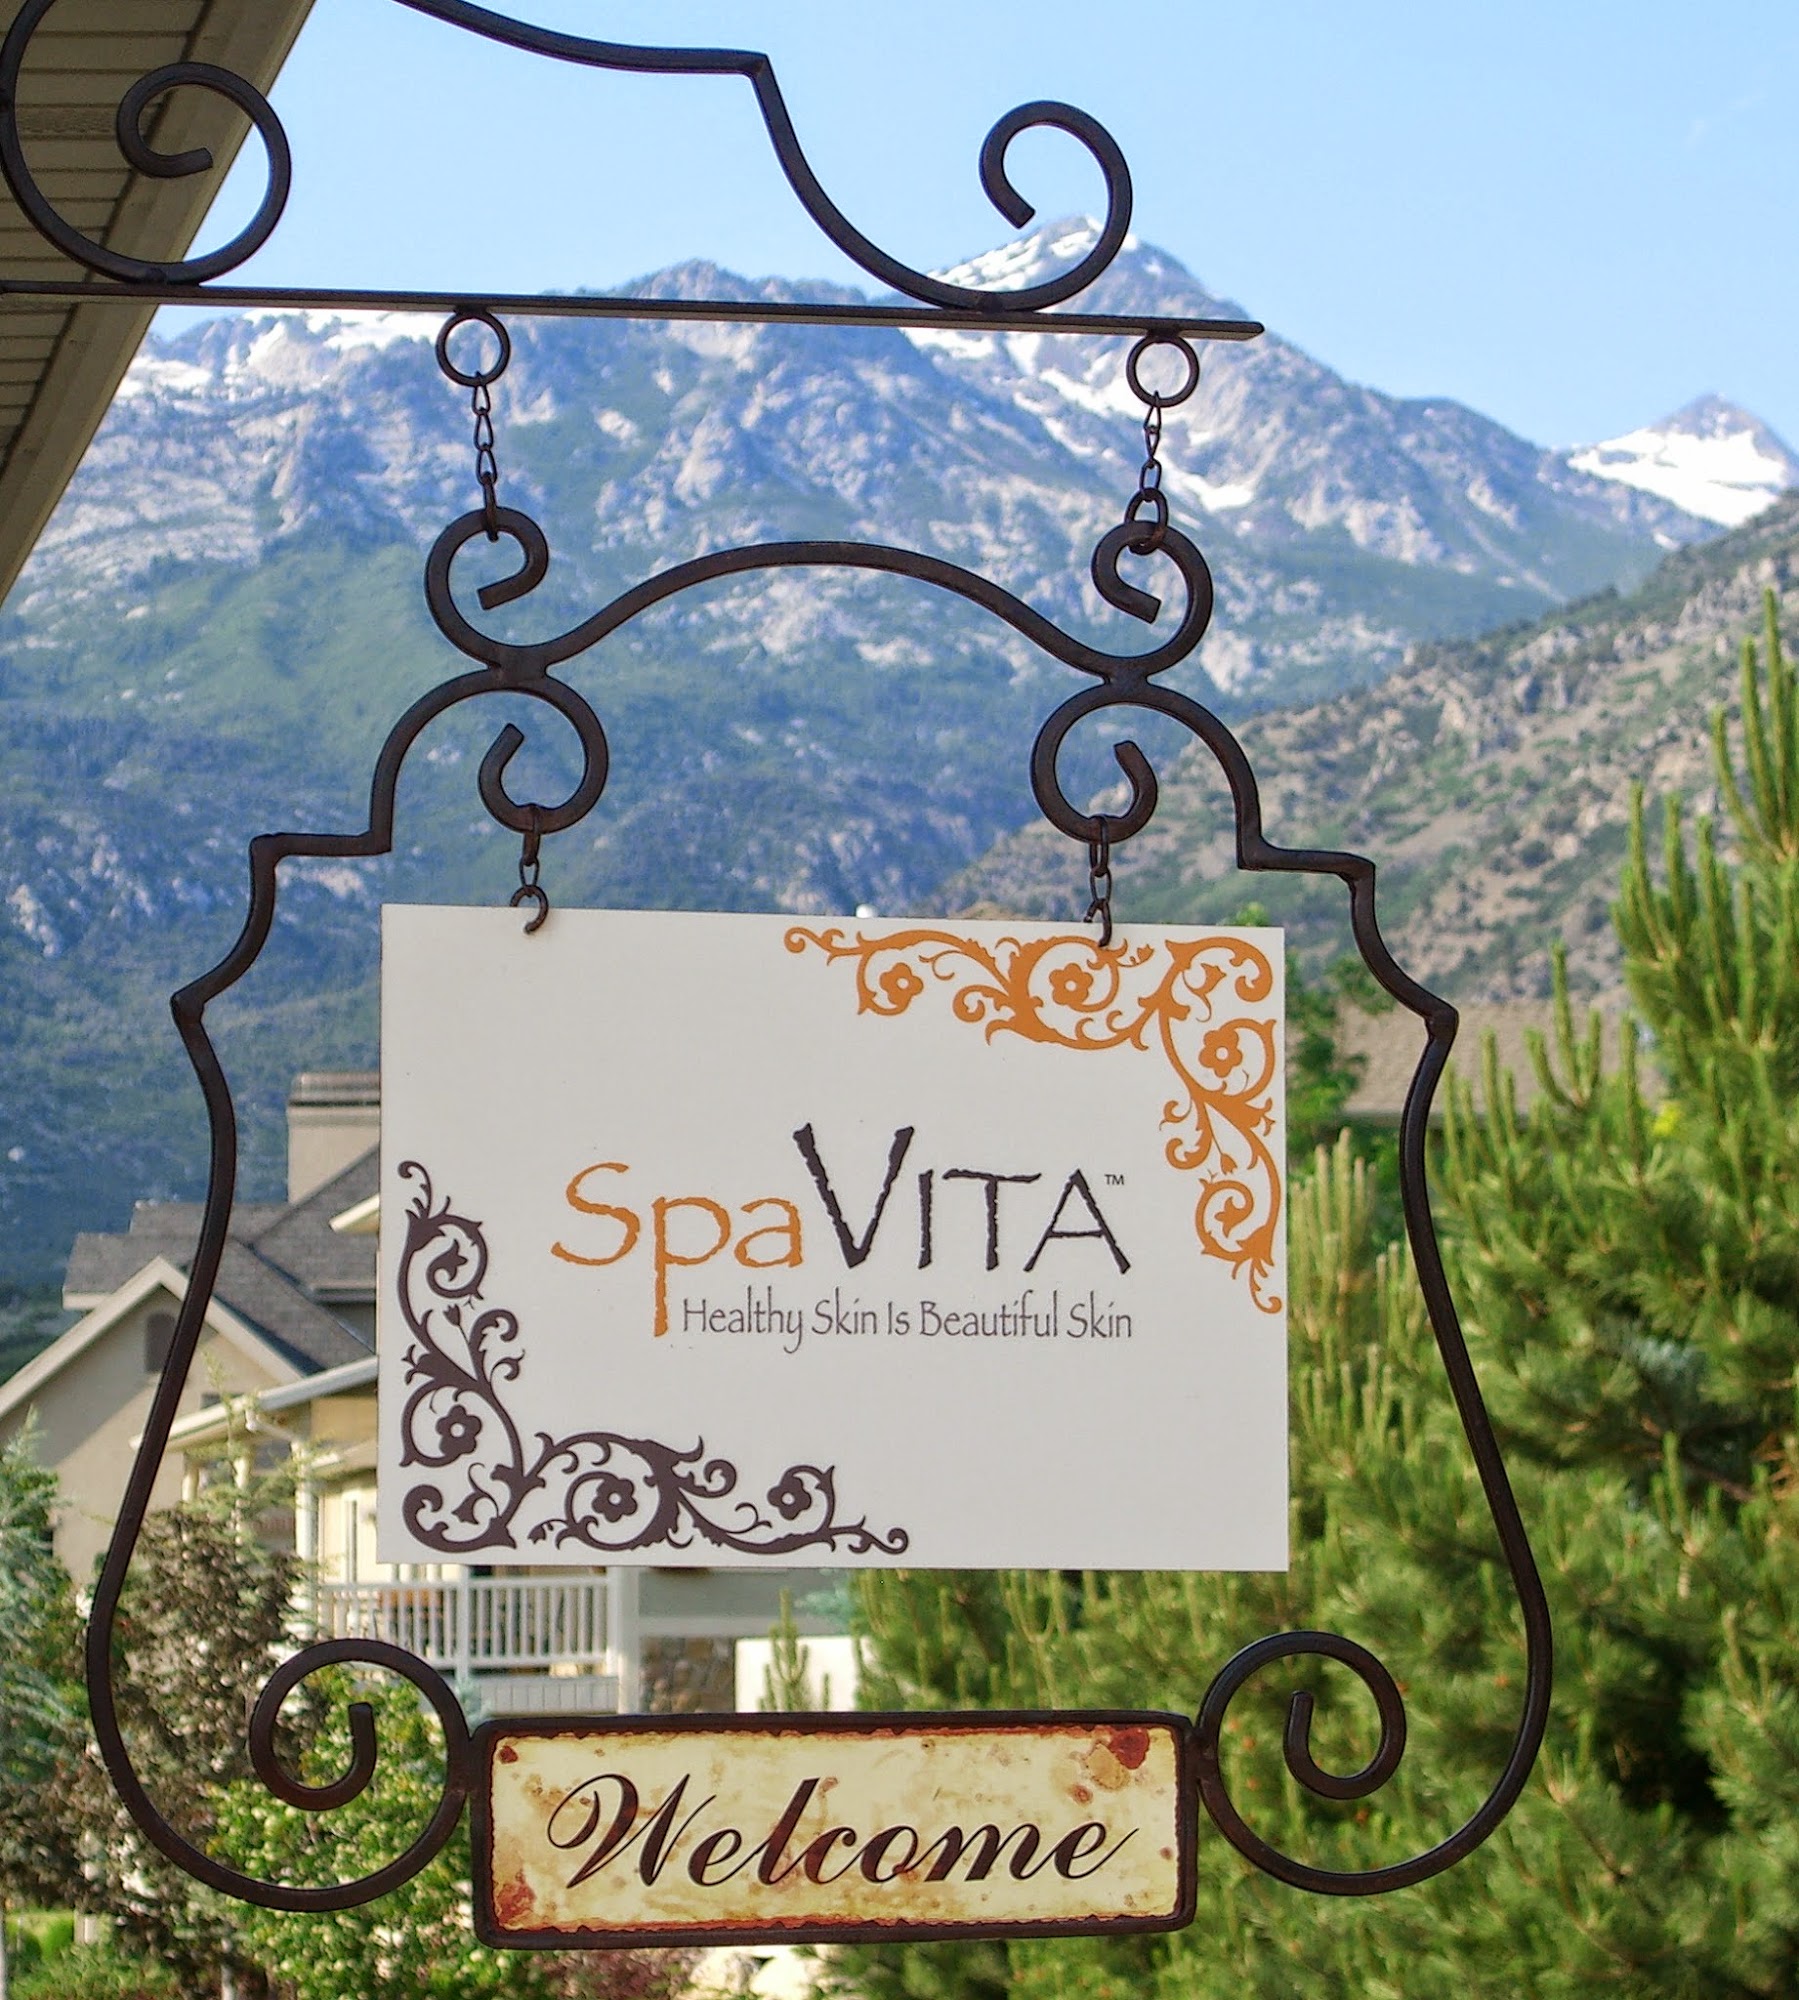 SpaVITA 1195 E 300 N St, Alpine Utah 84004